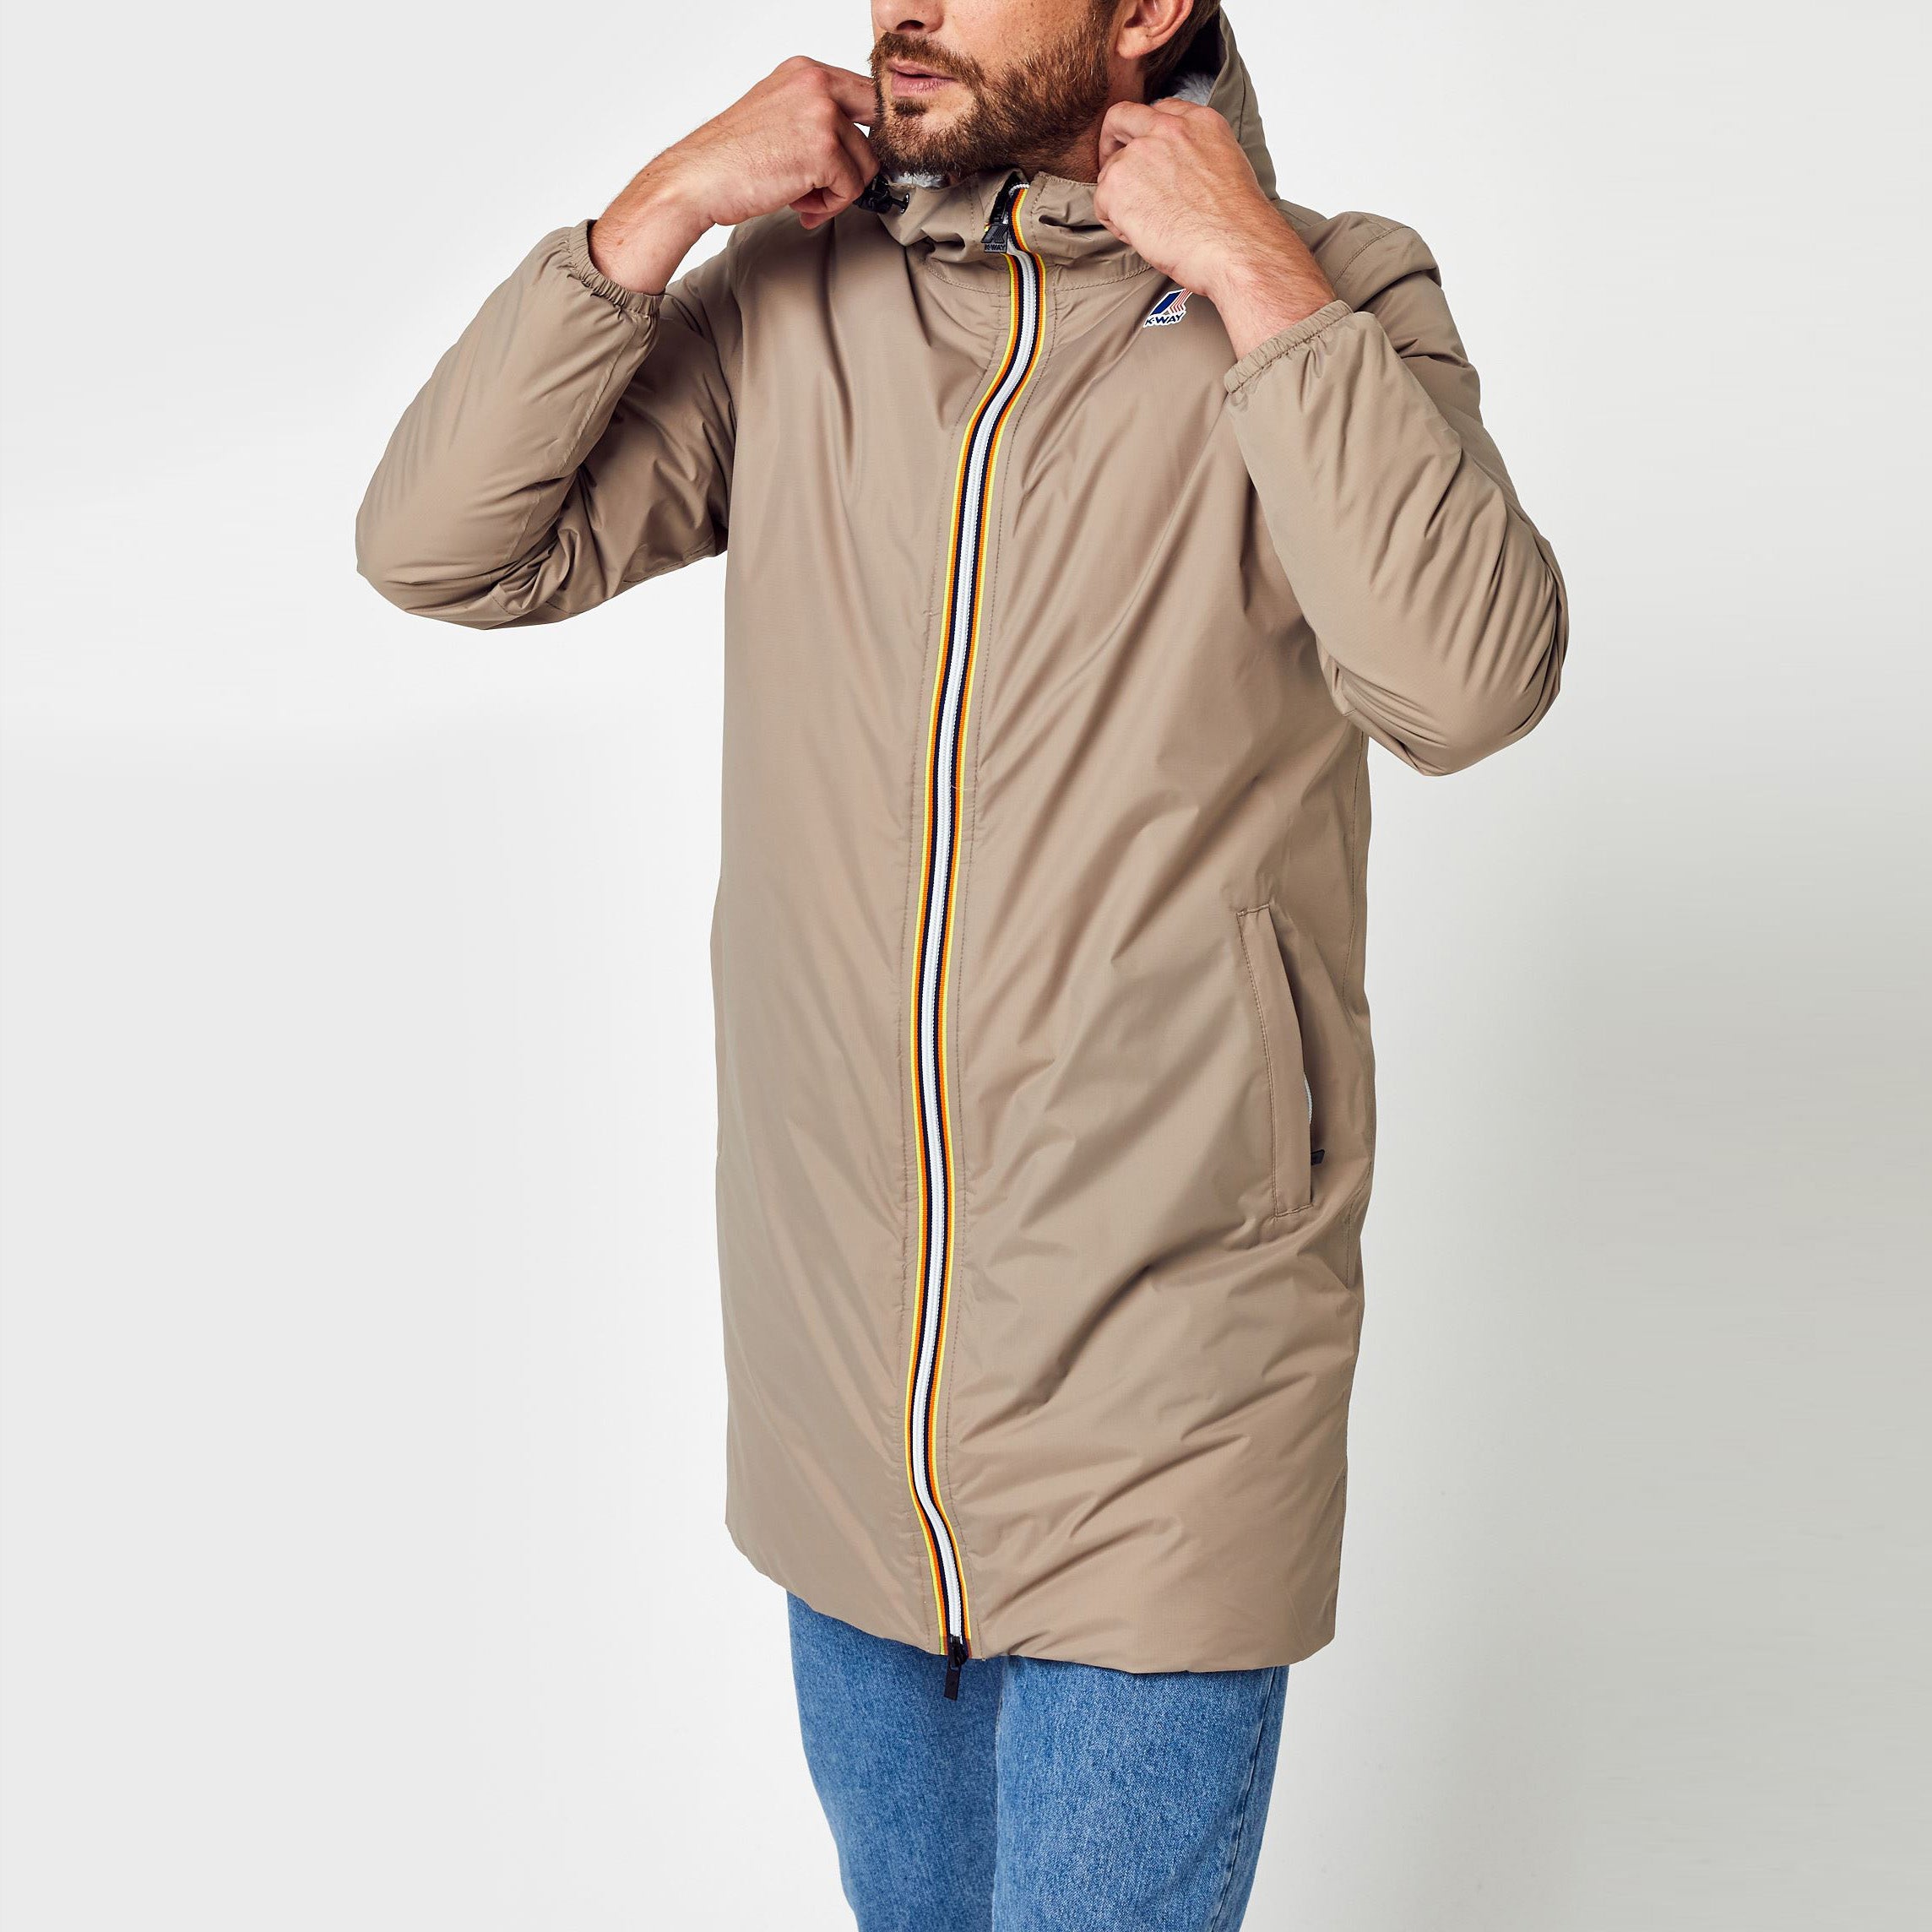 Eiffel Orsetto - Unisex Packable Lined Long Rain Jacket in Beige Grey